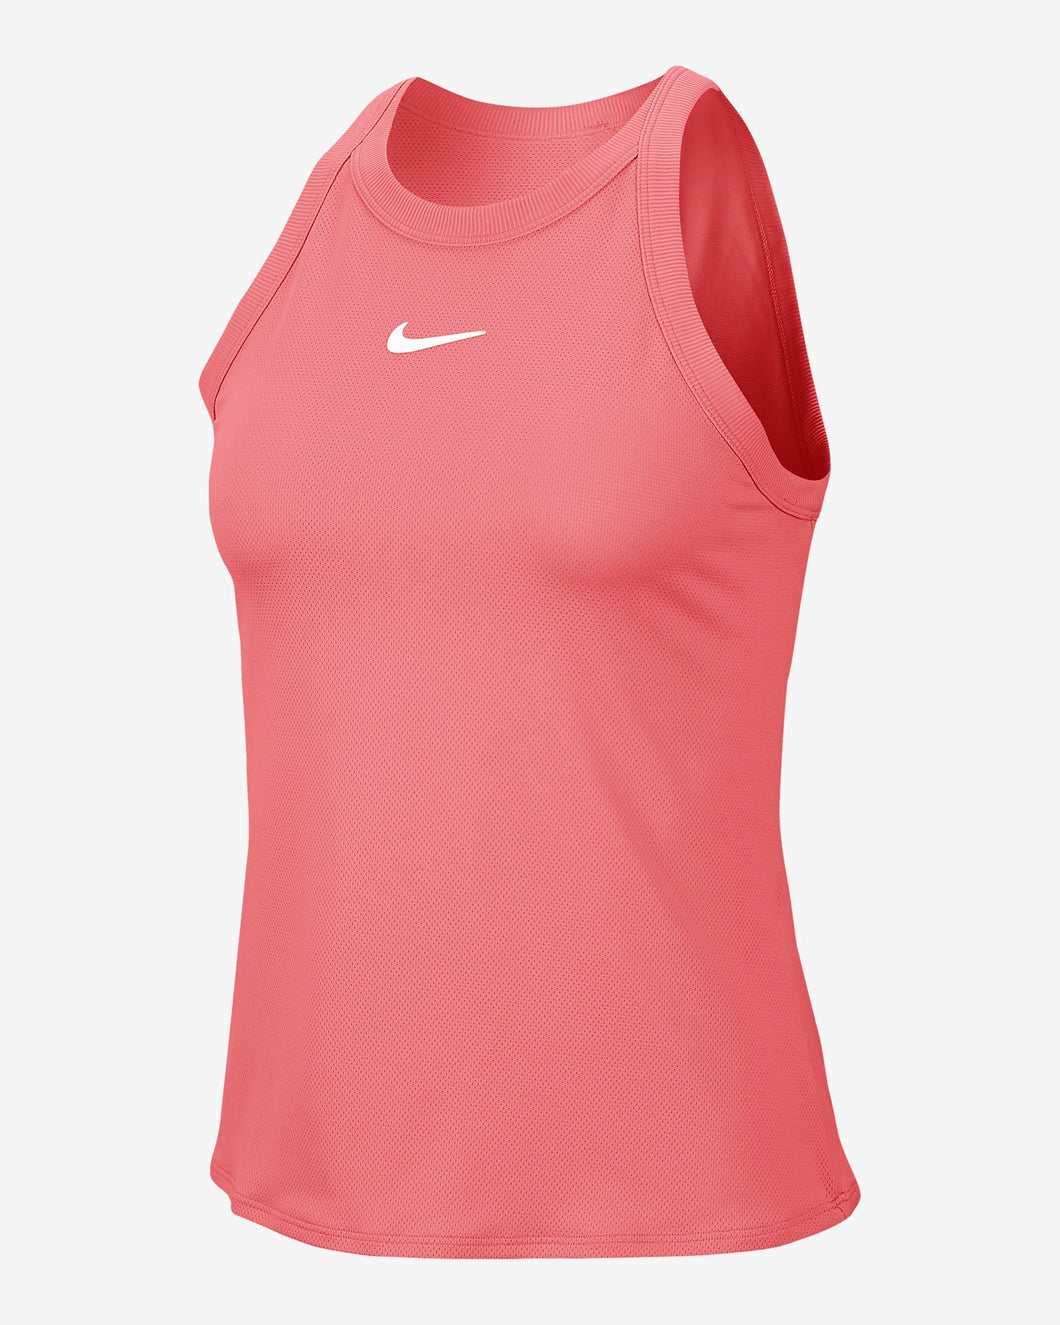 Nike Women's Summer Court Tank